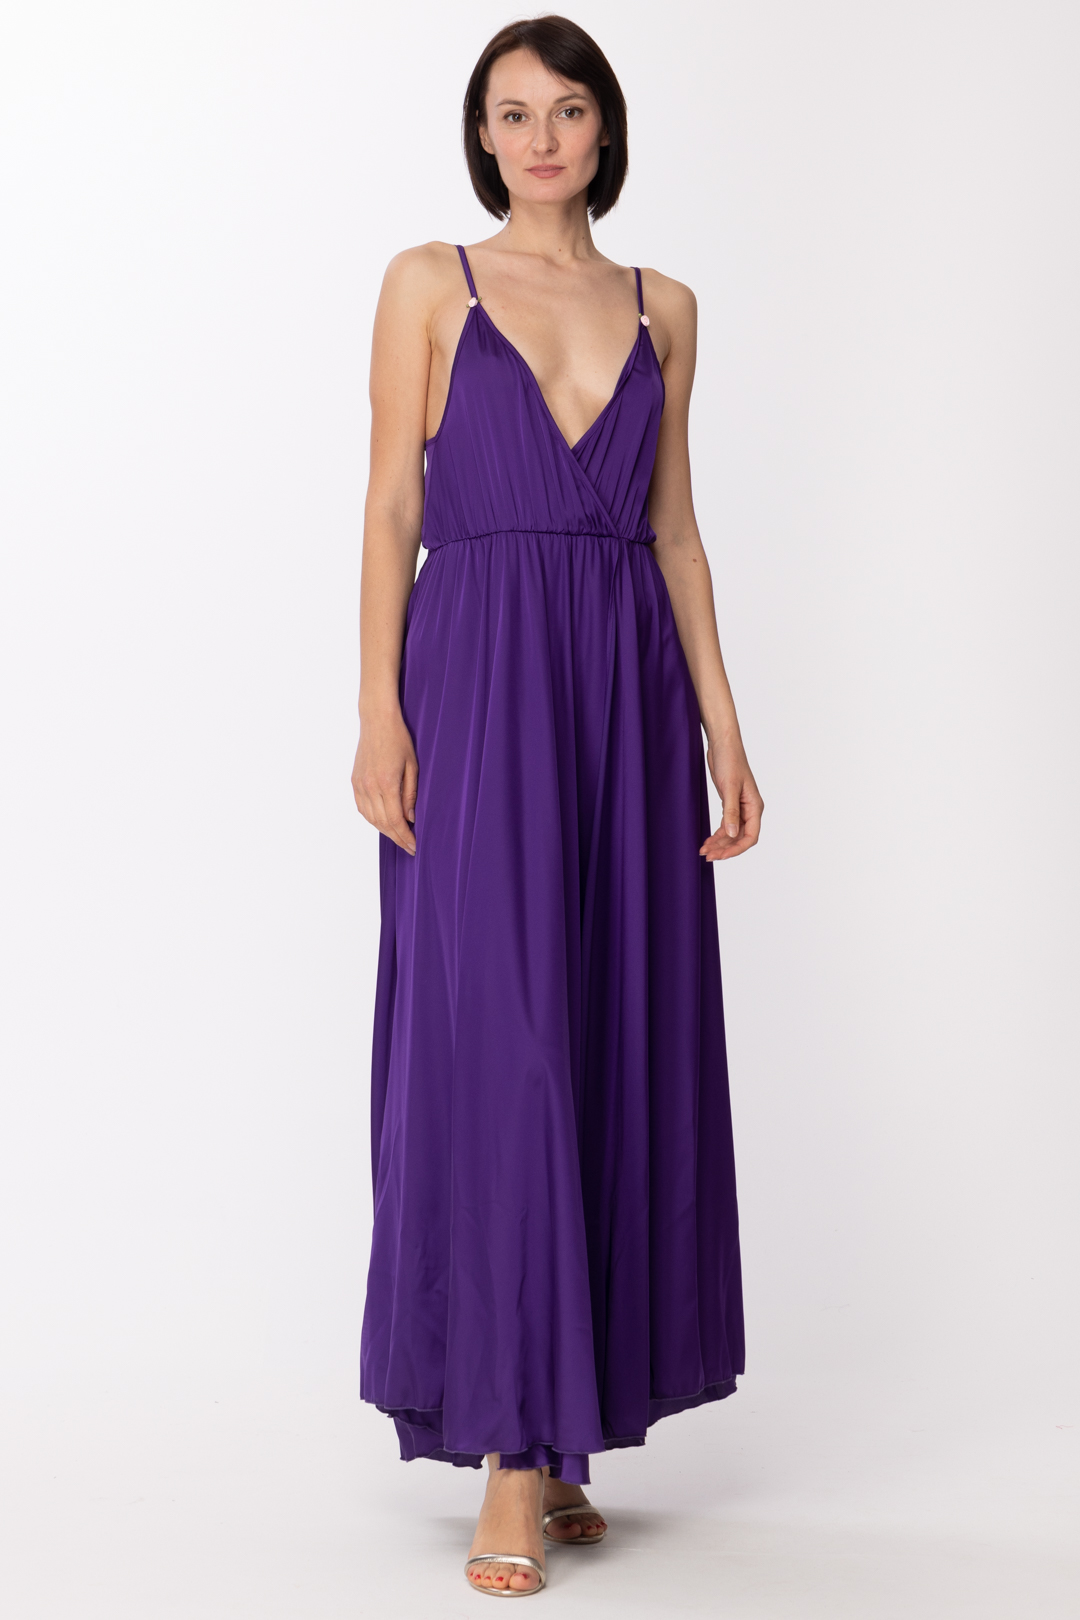 Vorschau: Aniye By Langes Kleid Eda aus Satin Purple